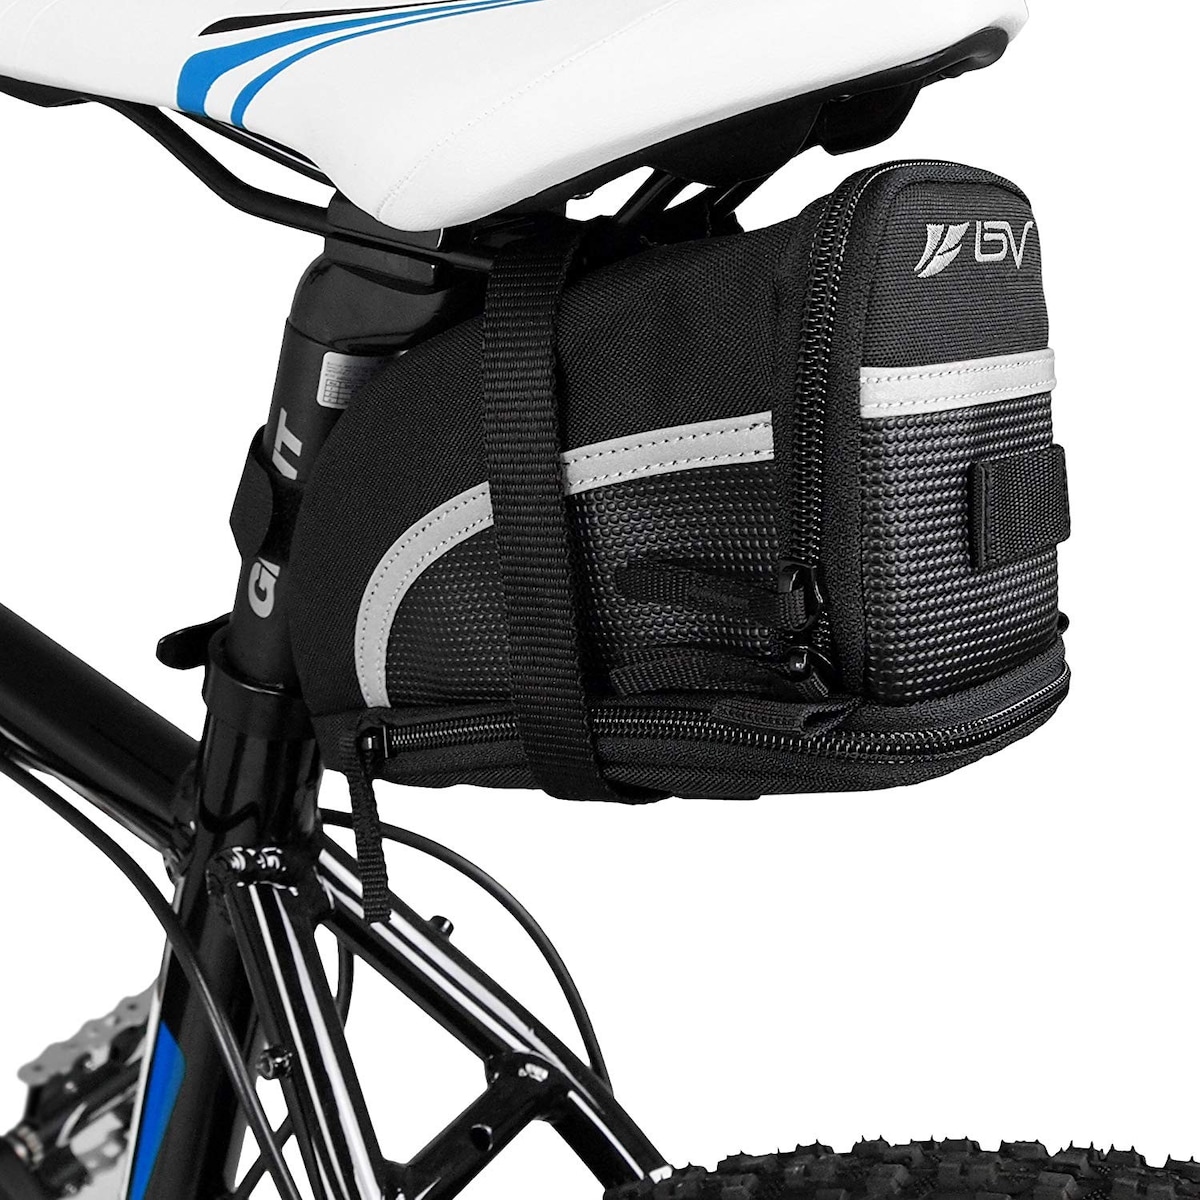  ストラップ式 自転車バッグ シートバッグ 容量拡張画像2 